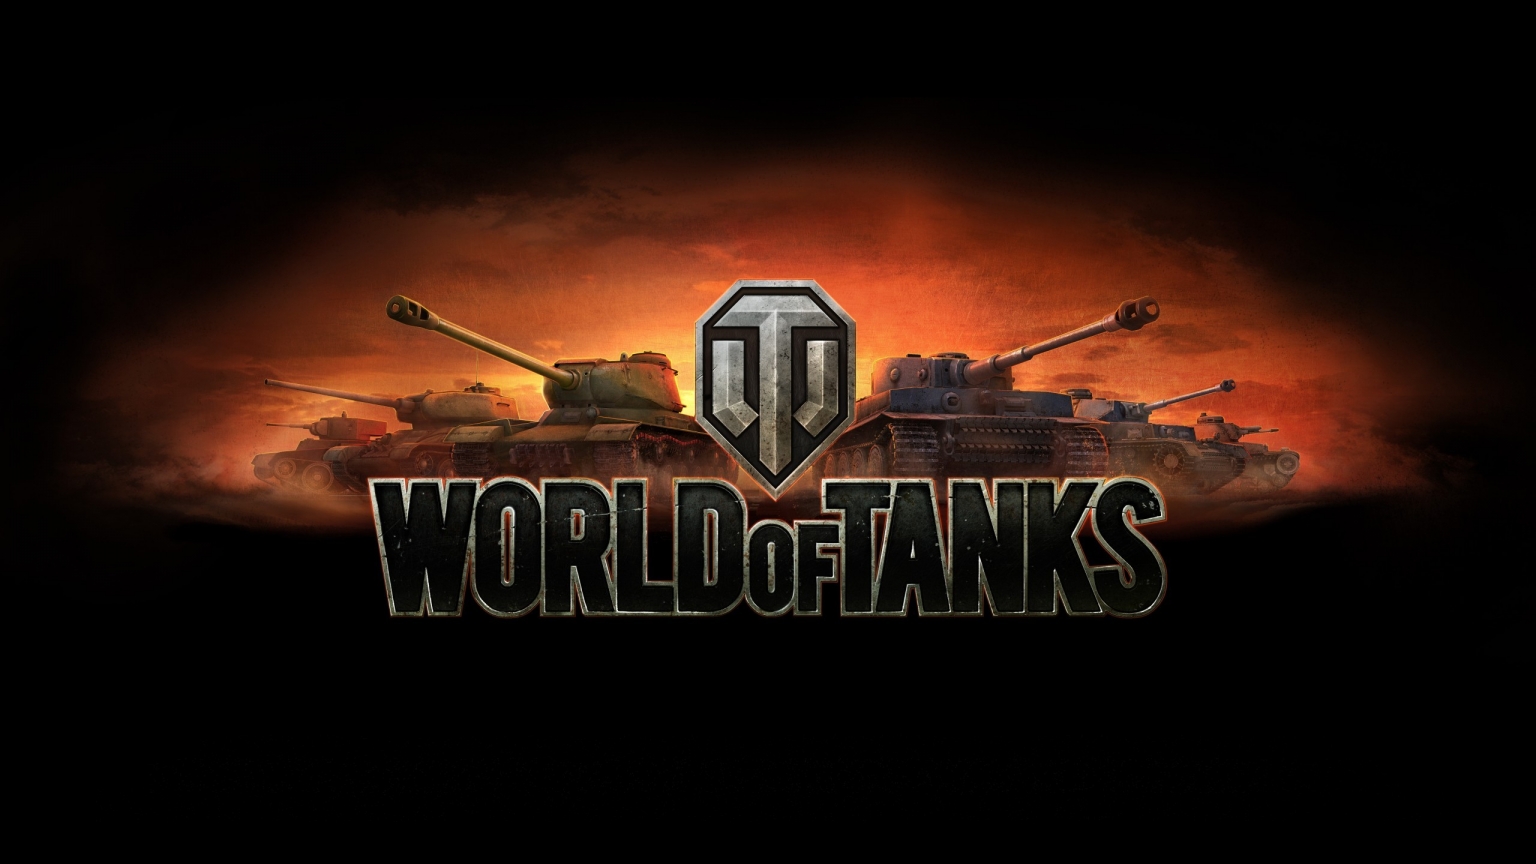 World of Tanks Poster for 1536 x 864 HDTV resolution